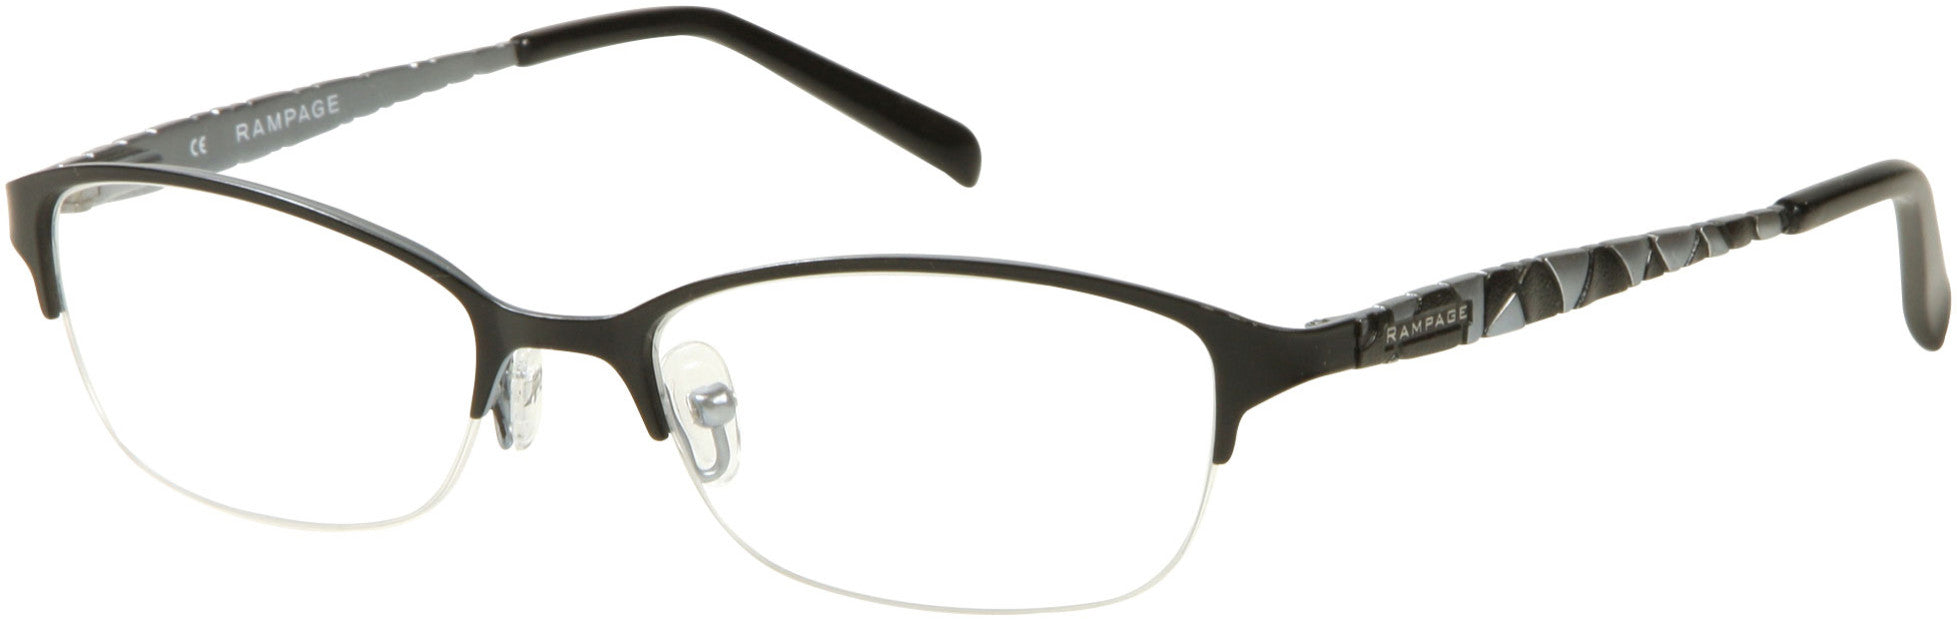 Rampage RA0174 Eyeglasses B84-B84 - Black